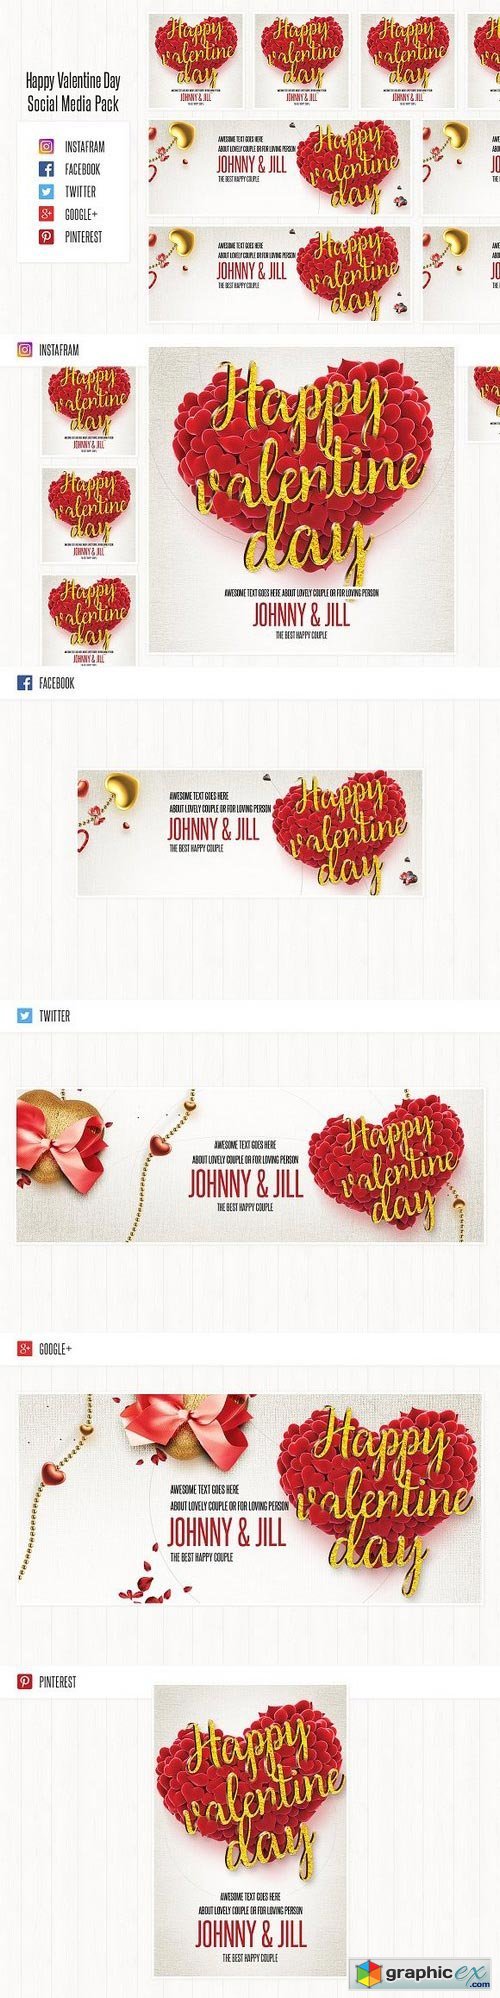 Valentine's Day Social Media Pack